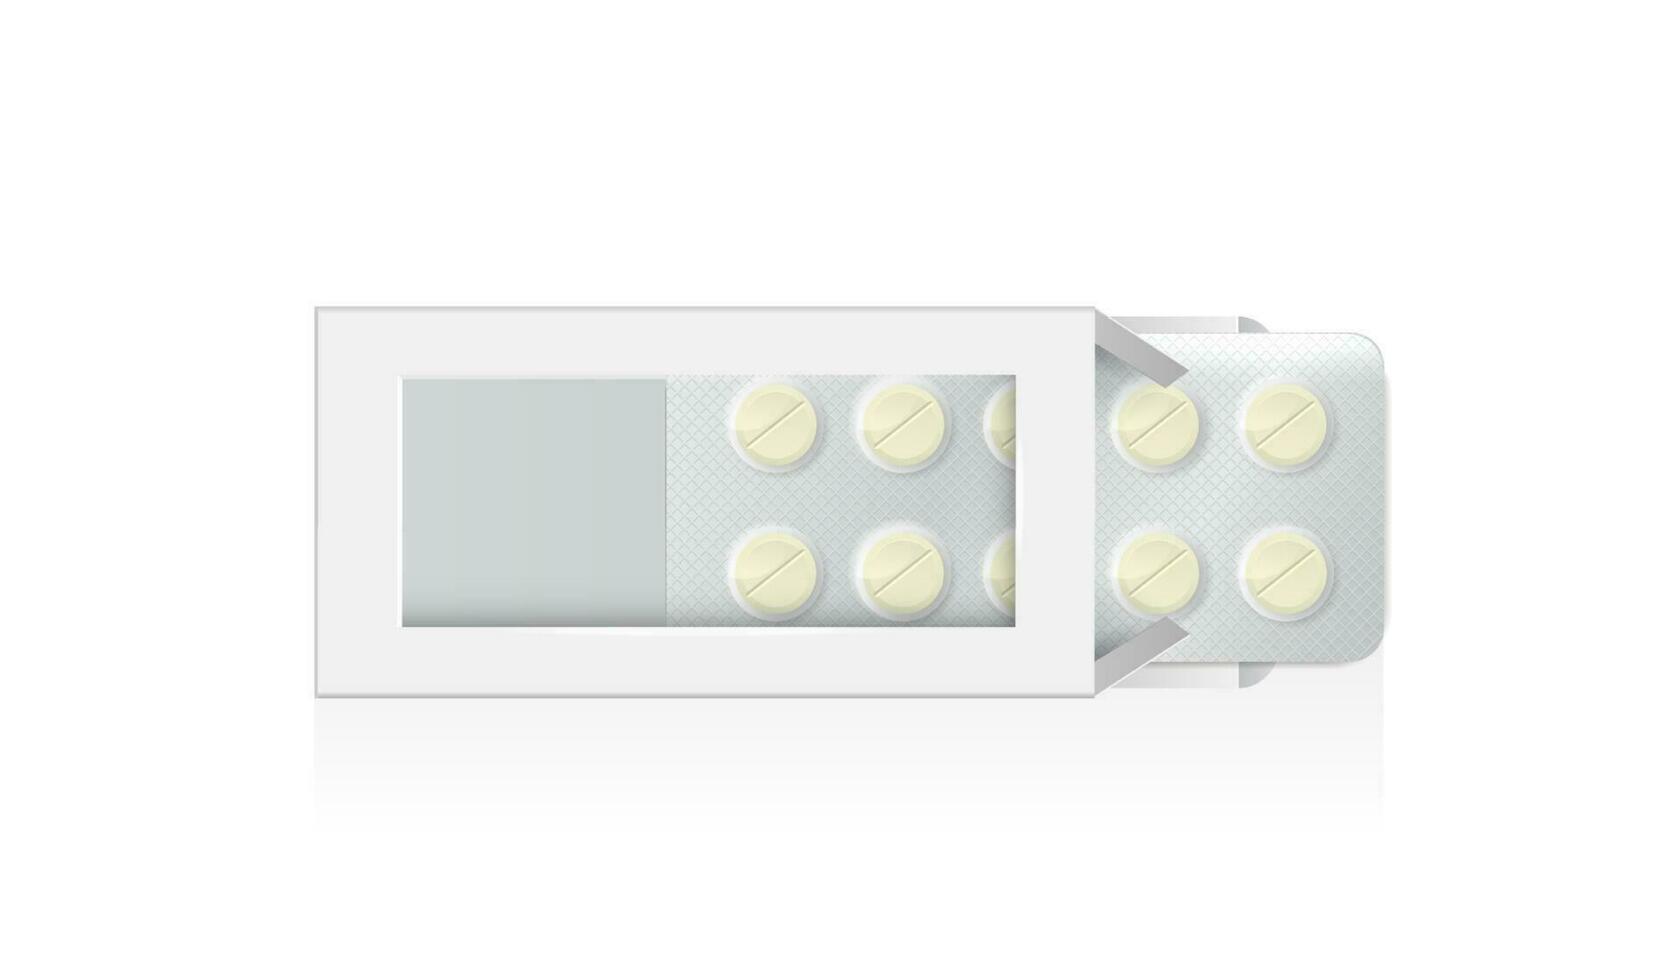 médico drogas en abierto blanco caja. realista burlarse de arriba de farmacia paquete, redondo y oval pastillas y tabletas en blanco caja de cartón paquetes modelo de medicamentos envase. vector diseño.